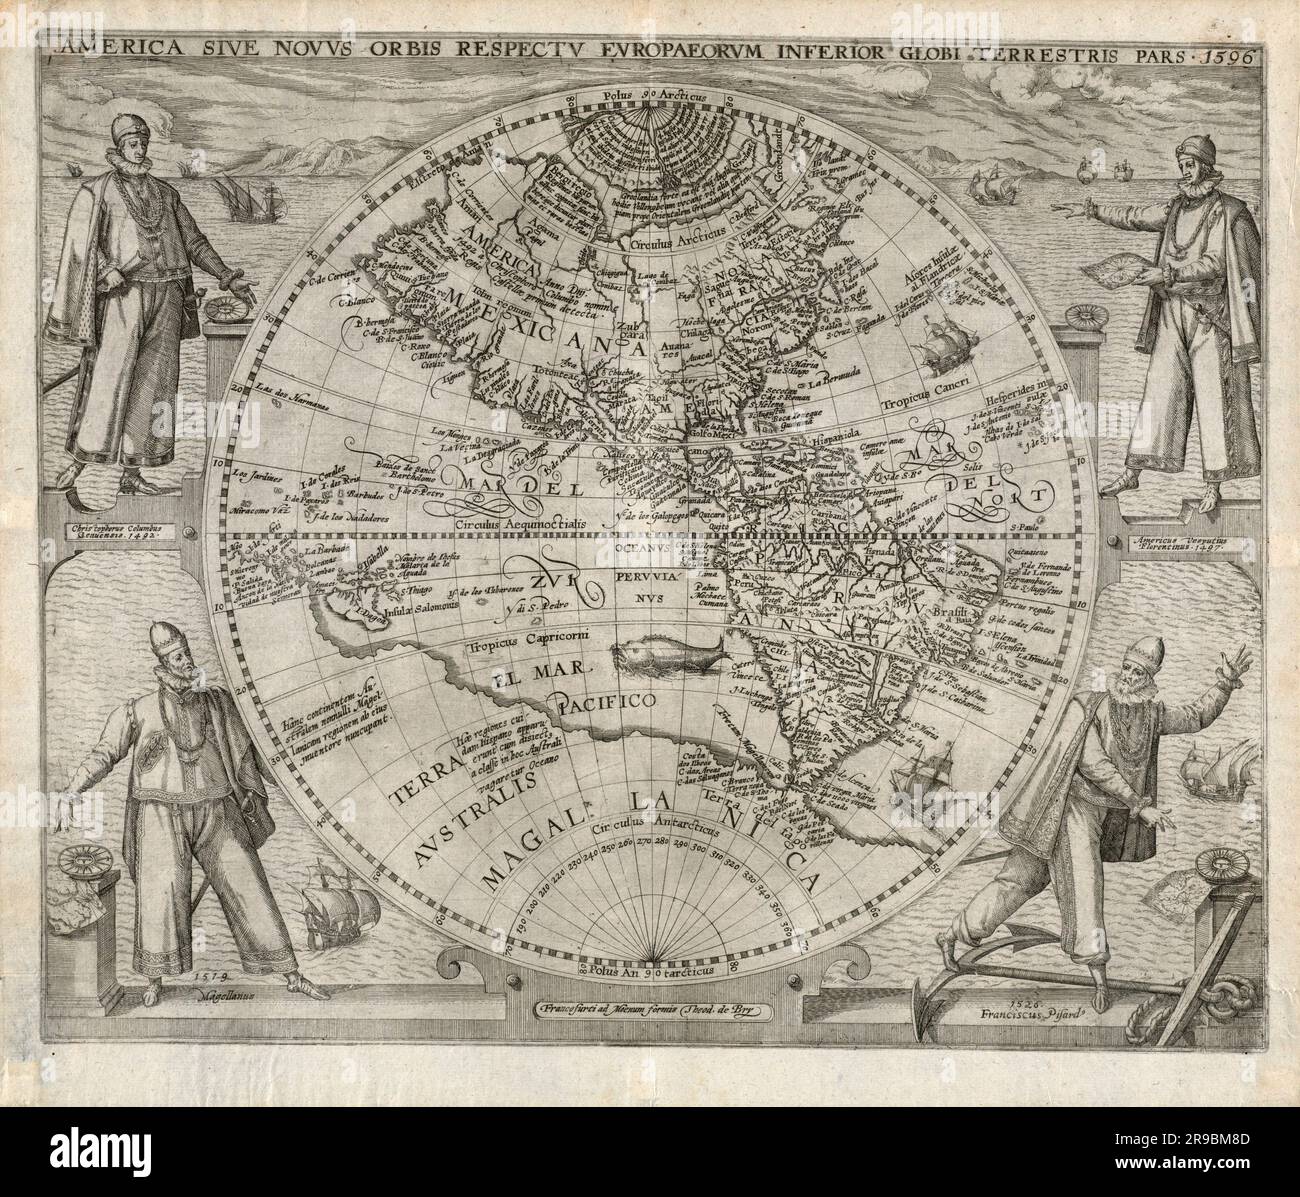 Mappa circolare d'epoca delle Americhe 1596 circa di Theodor de Bry. Nella mappa sono raffigurati gli esploratori Cristoforo Colombo, Amerigo Vespucii, Ferdinand Magellan e Francisco Pizarro (1526). Foto Stock